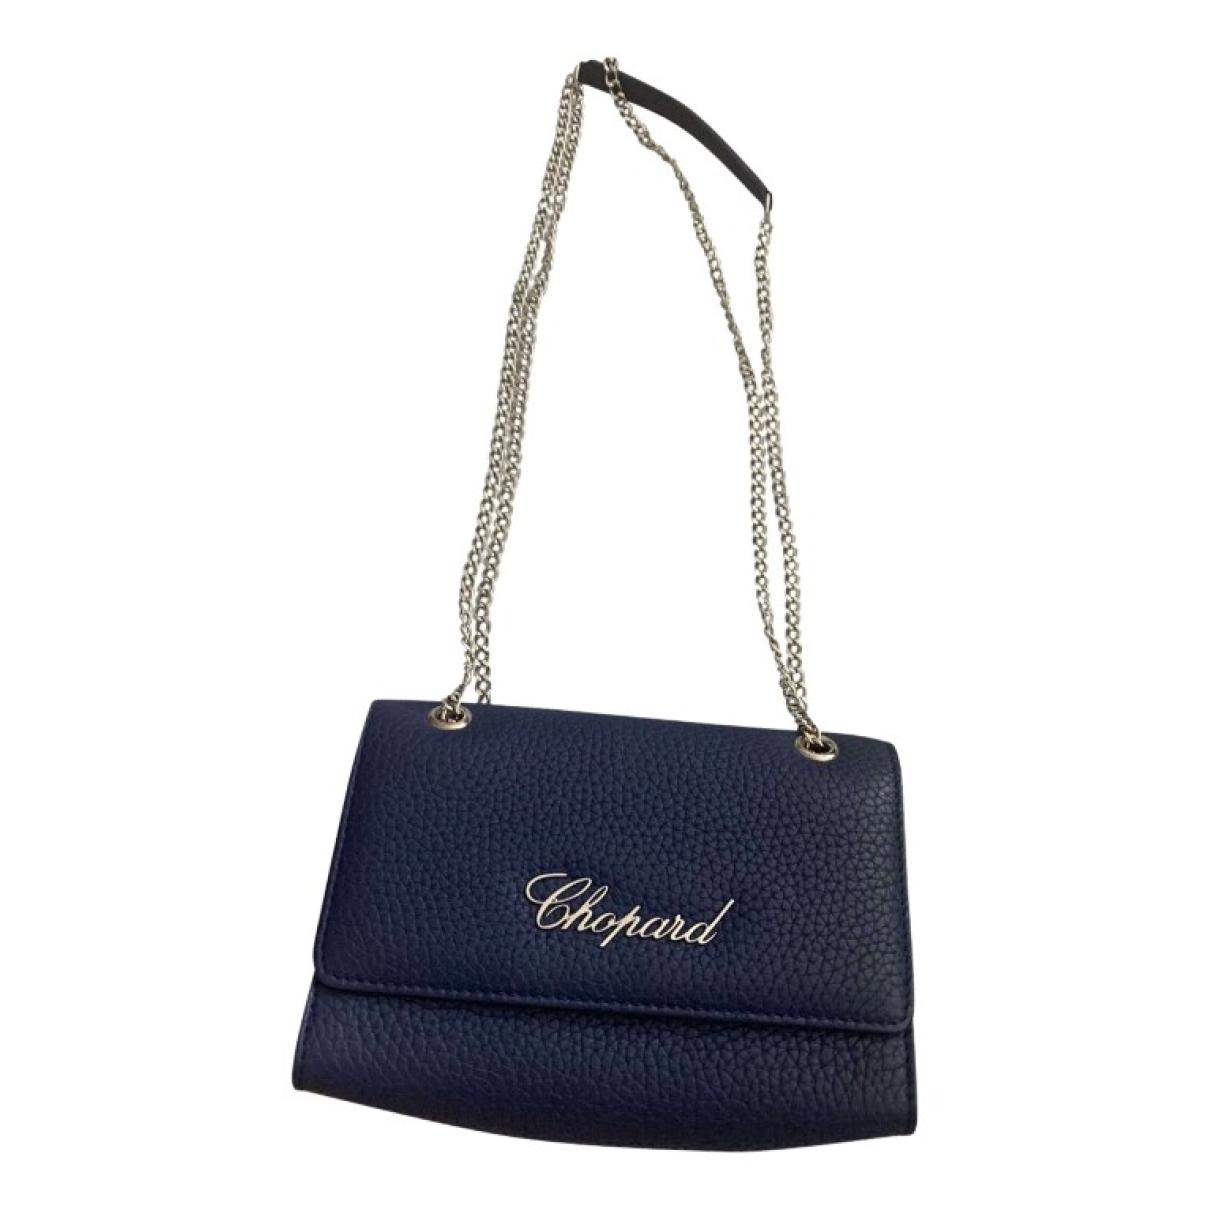 Leather handbag Chopard